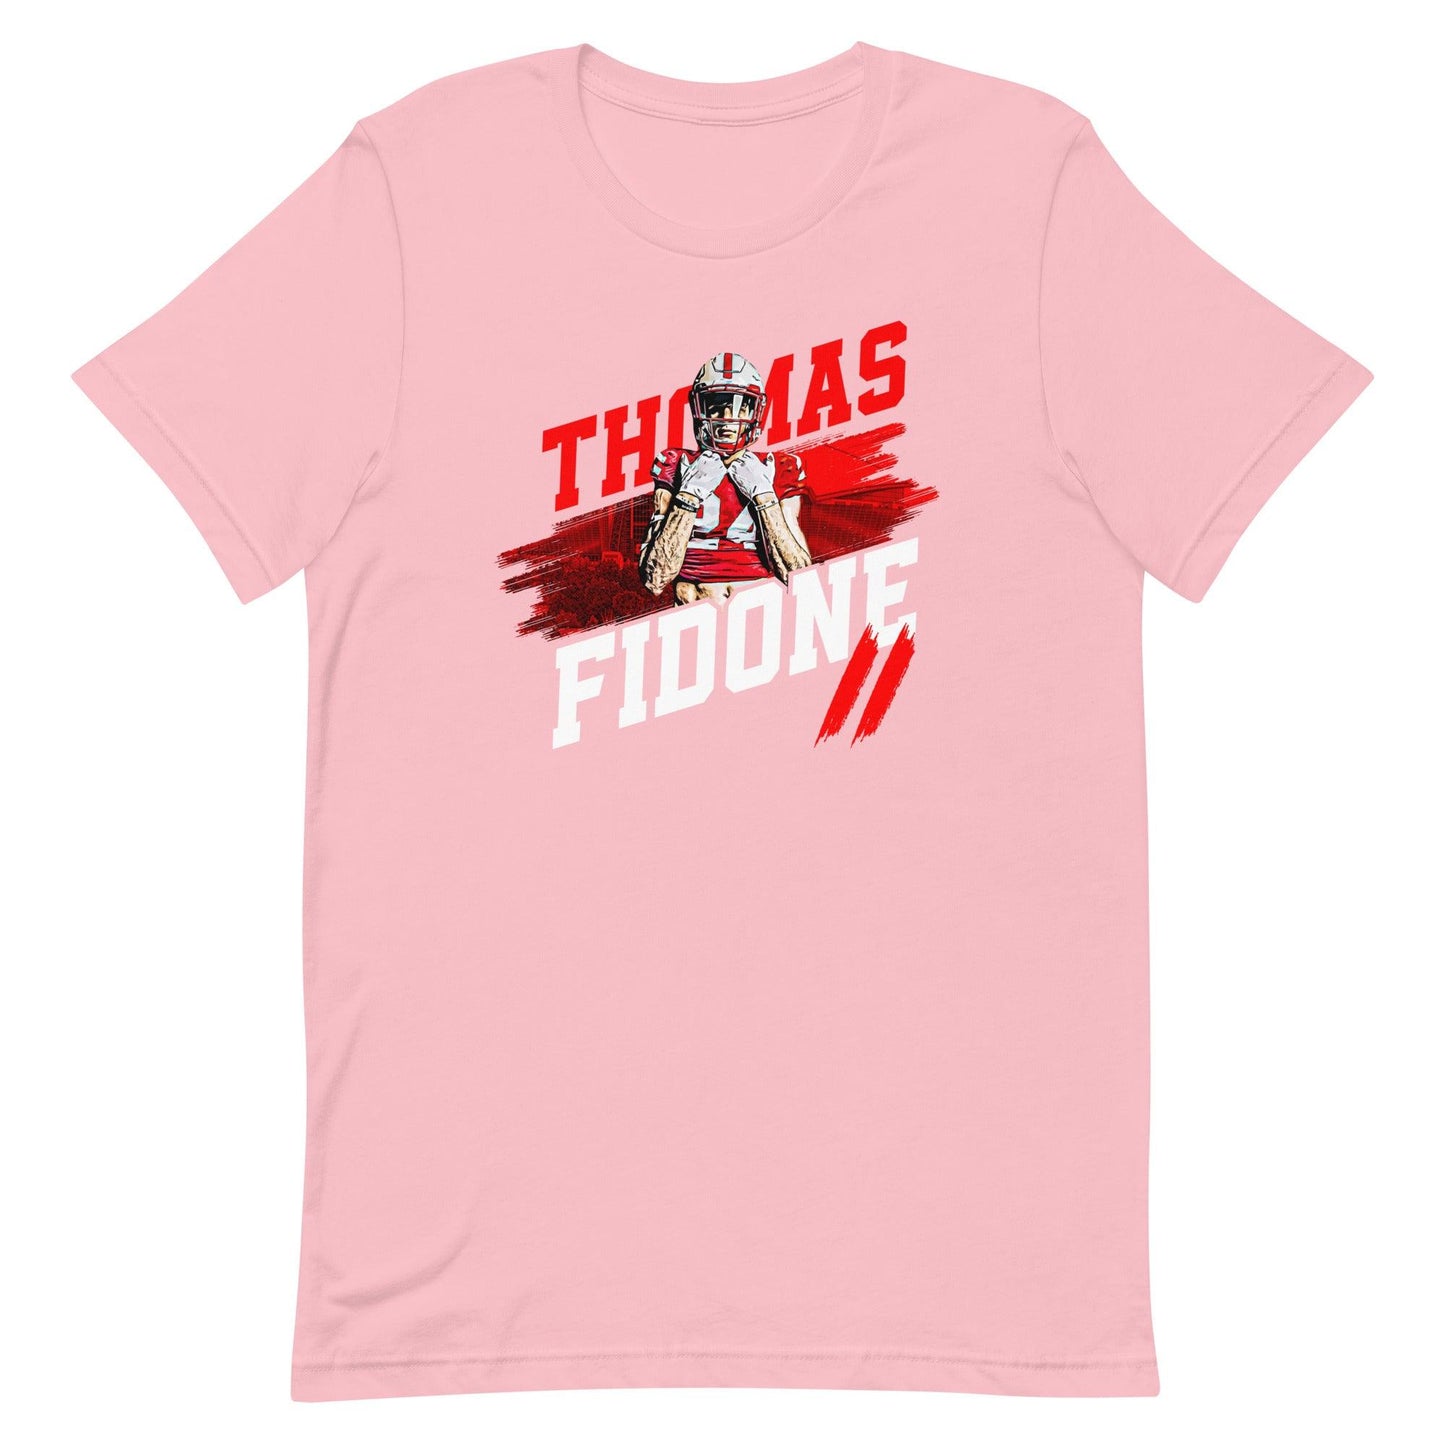 Thomas Fidone II "TFII" t-shirt - Fan Arch